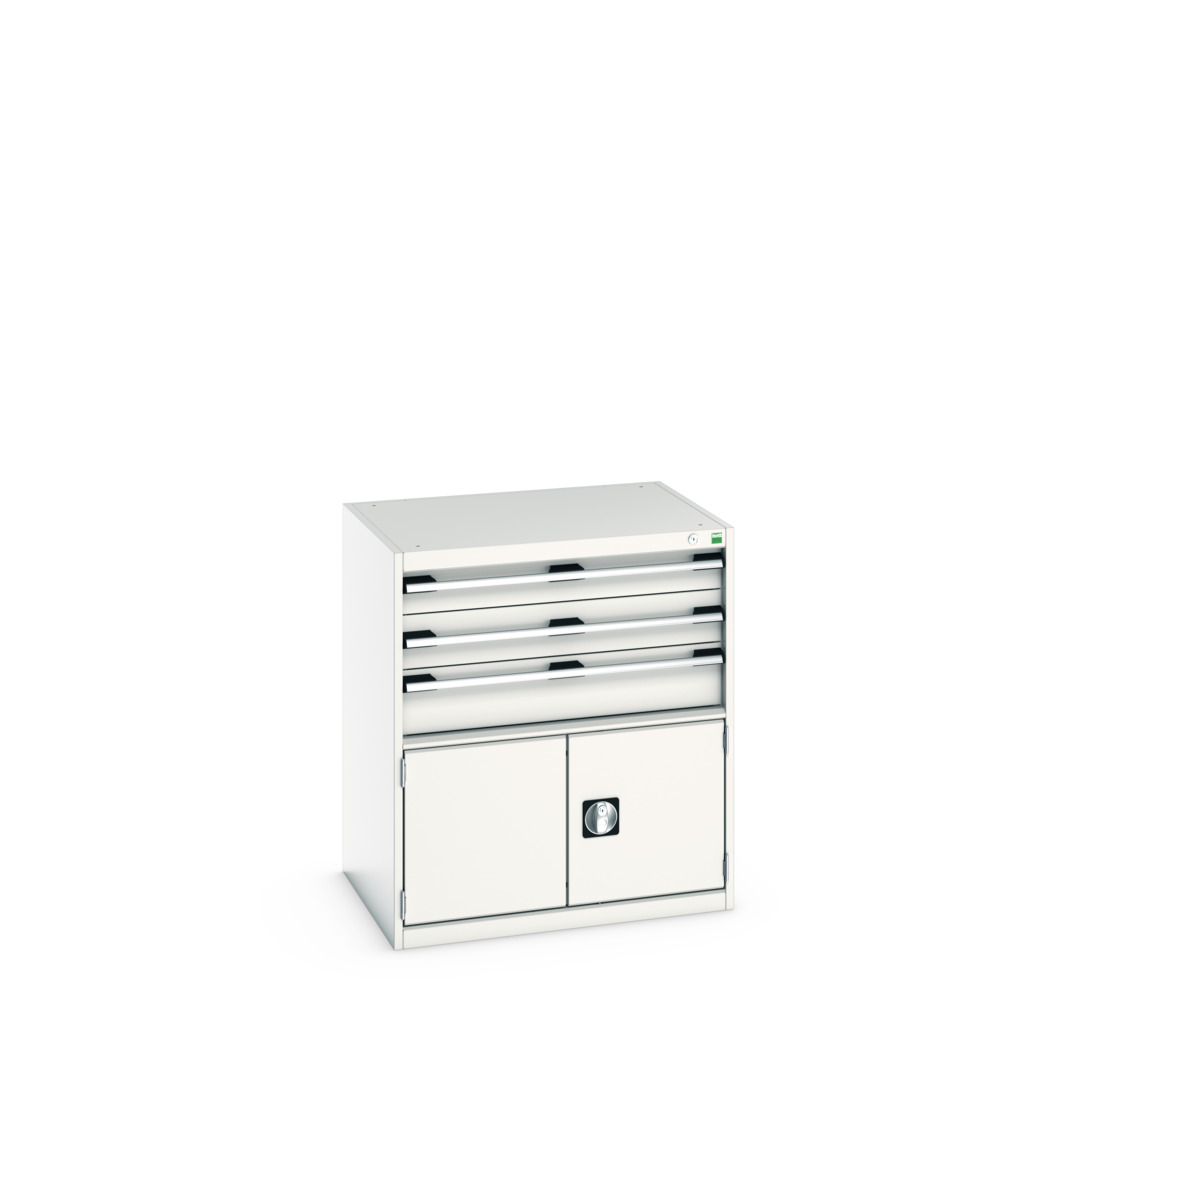 40020033.16V - cubio drawer-door cabinet